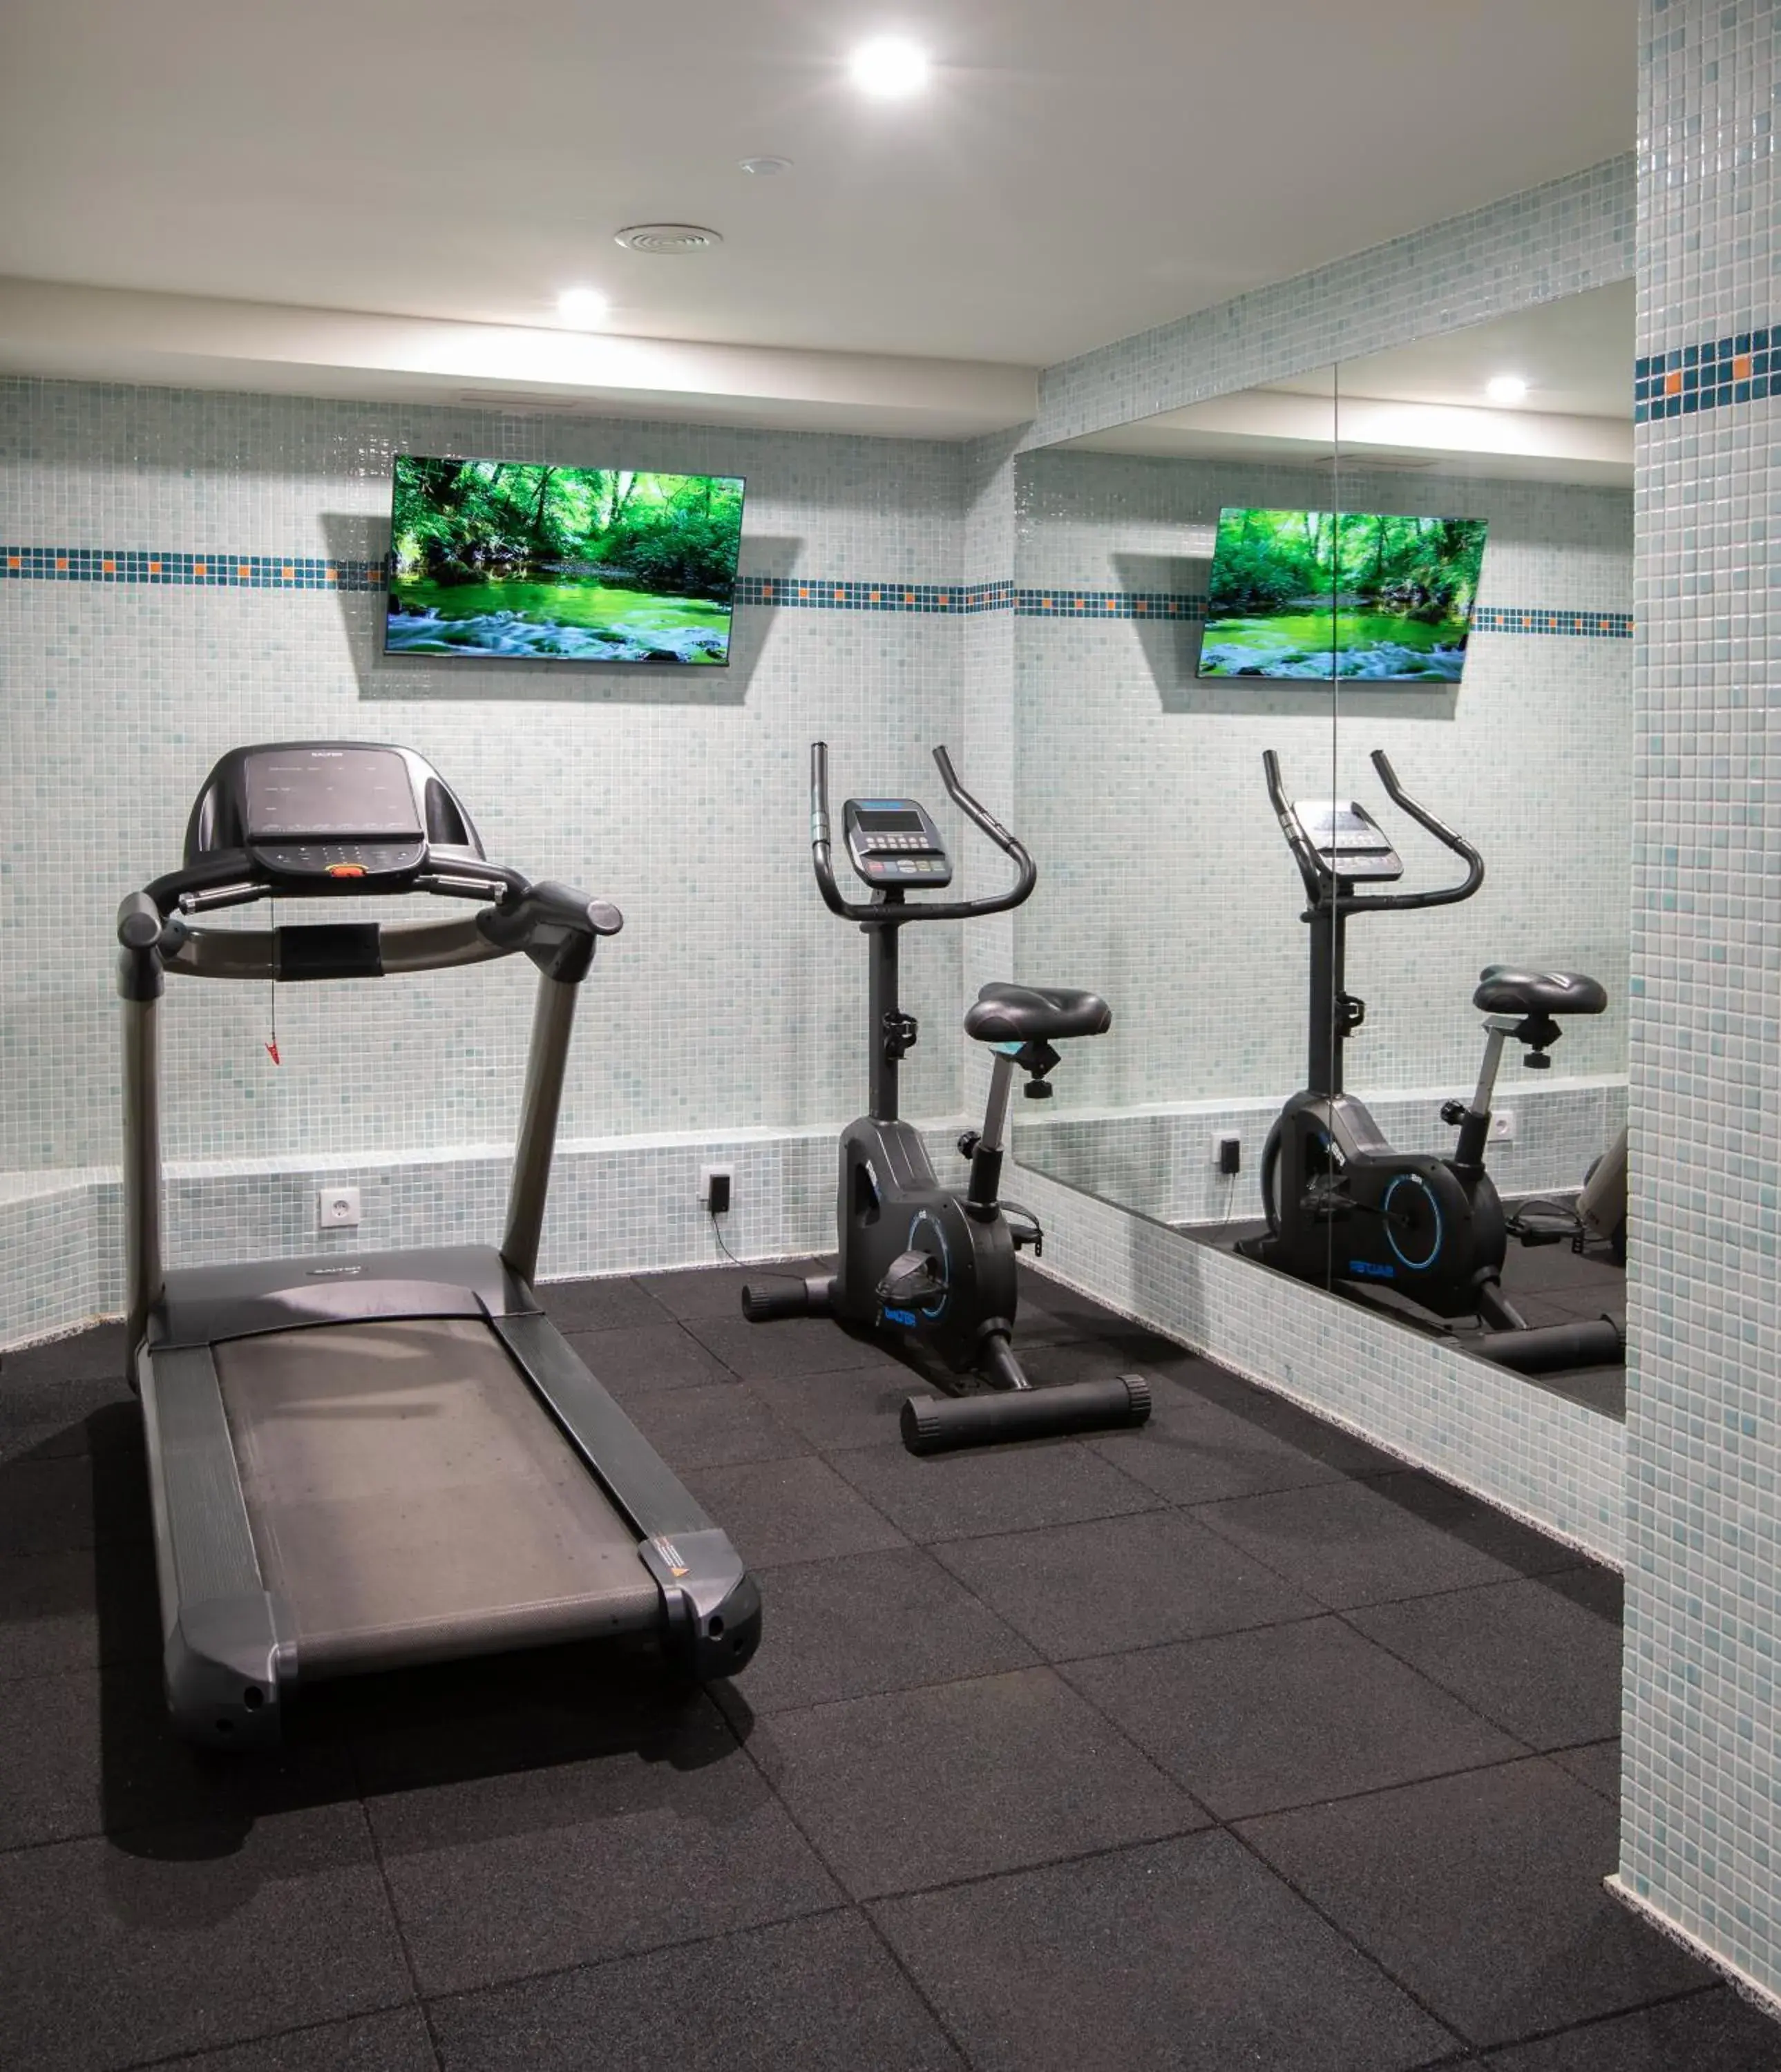 Fitness centre/facilities, Fitness Center/Facilities in Prestige Victoria